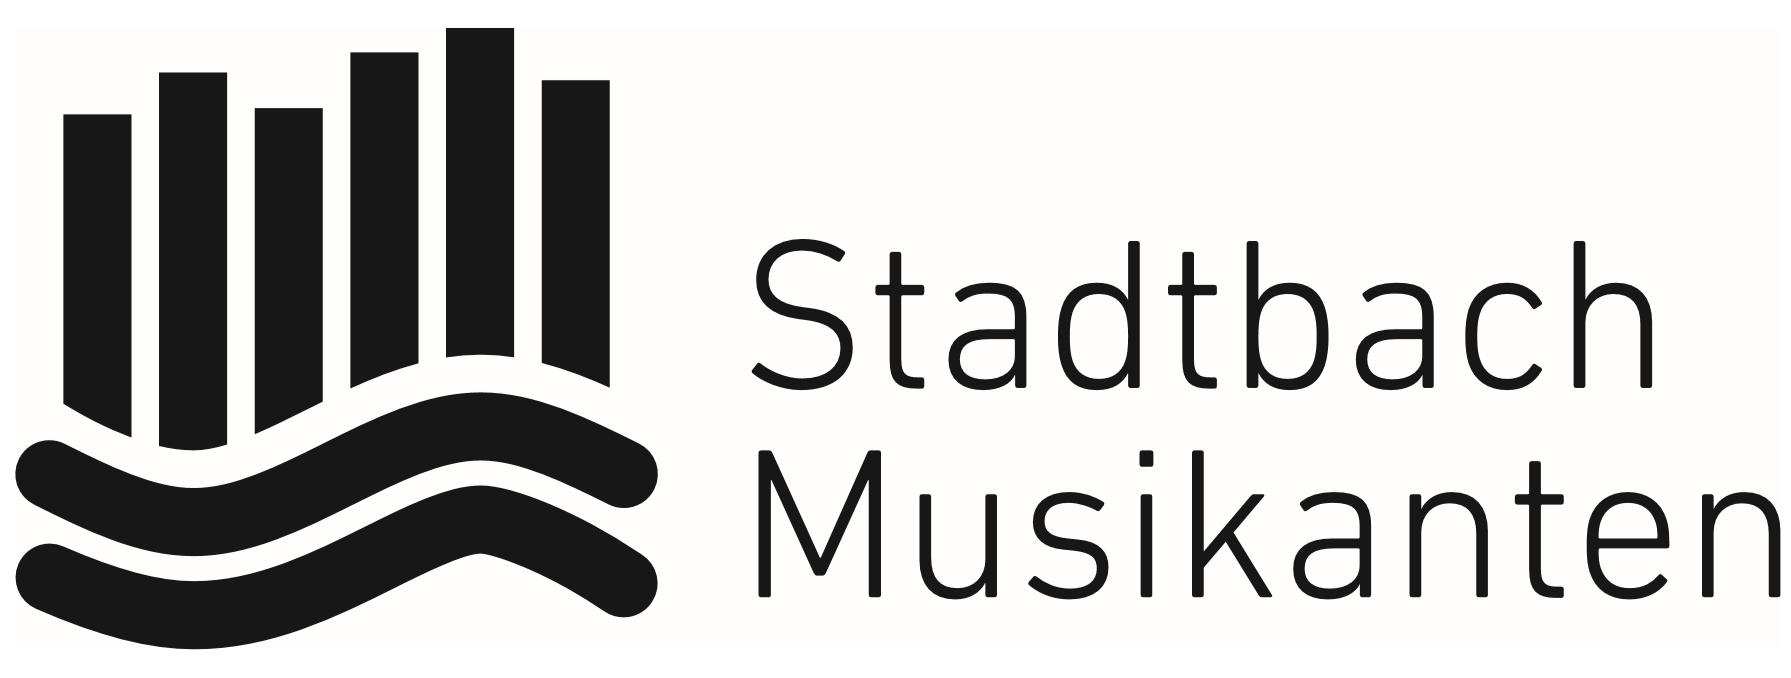 Stadtbachmusikanten